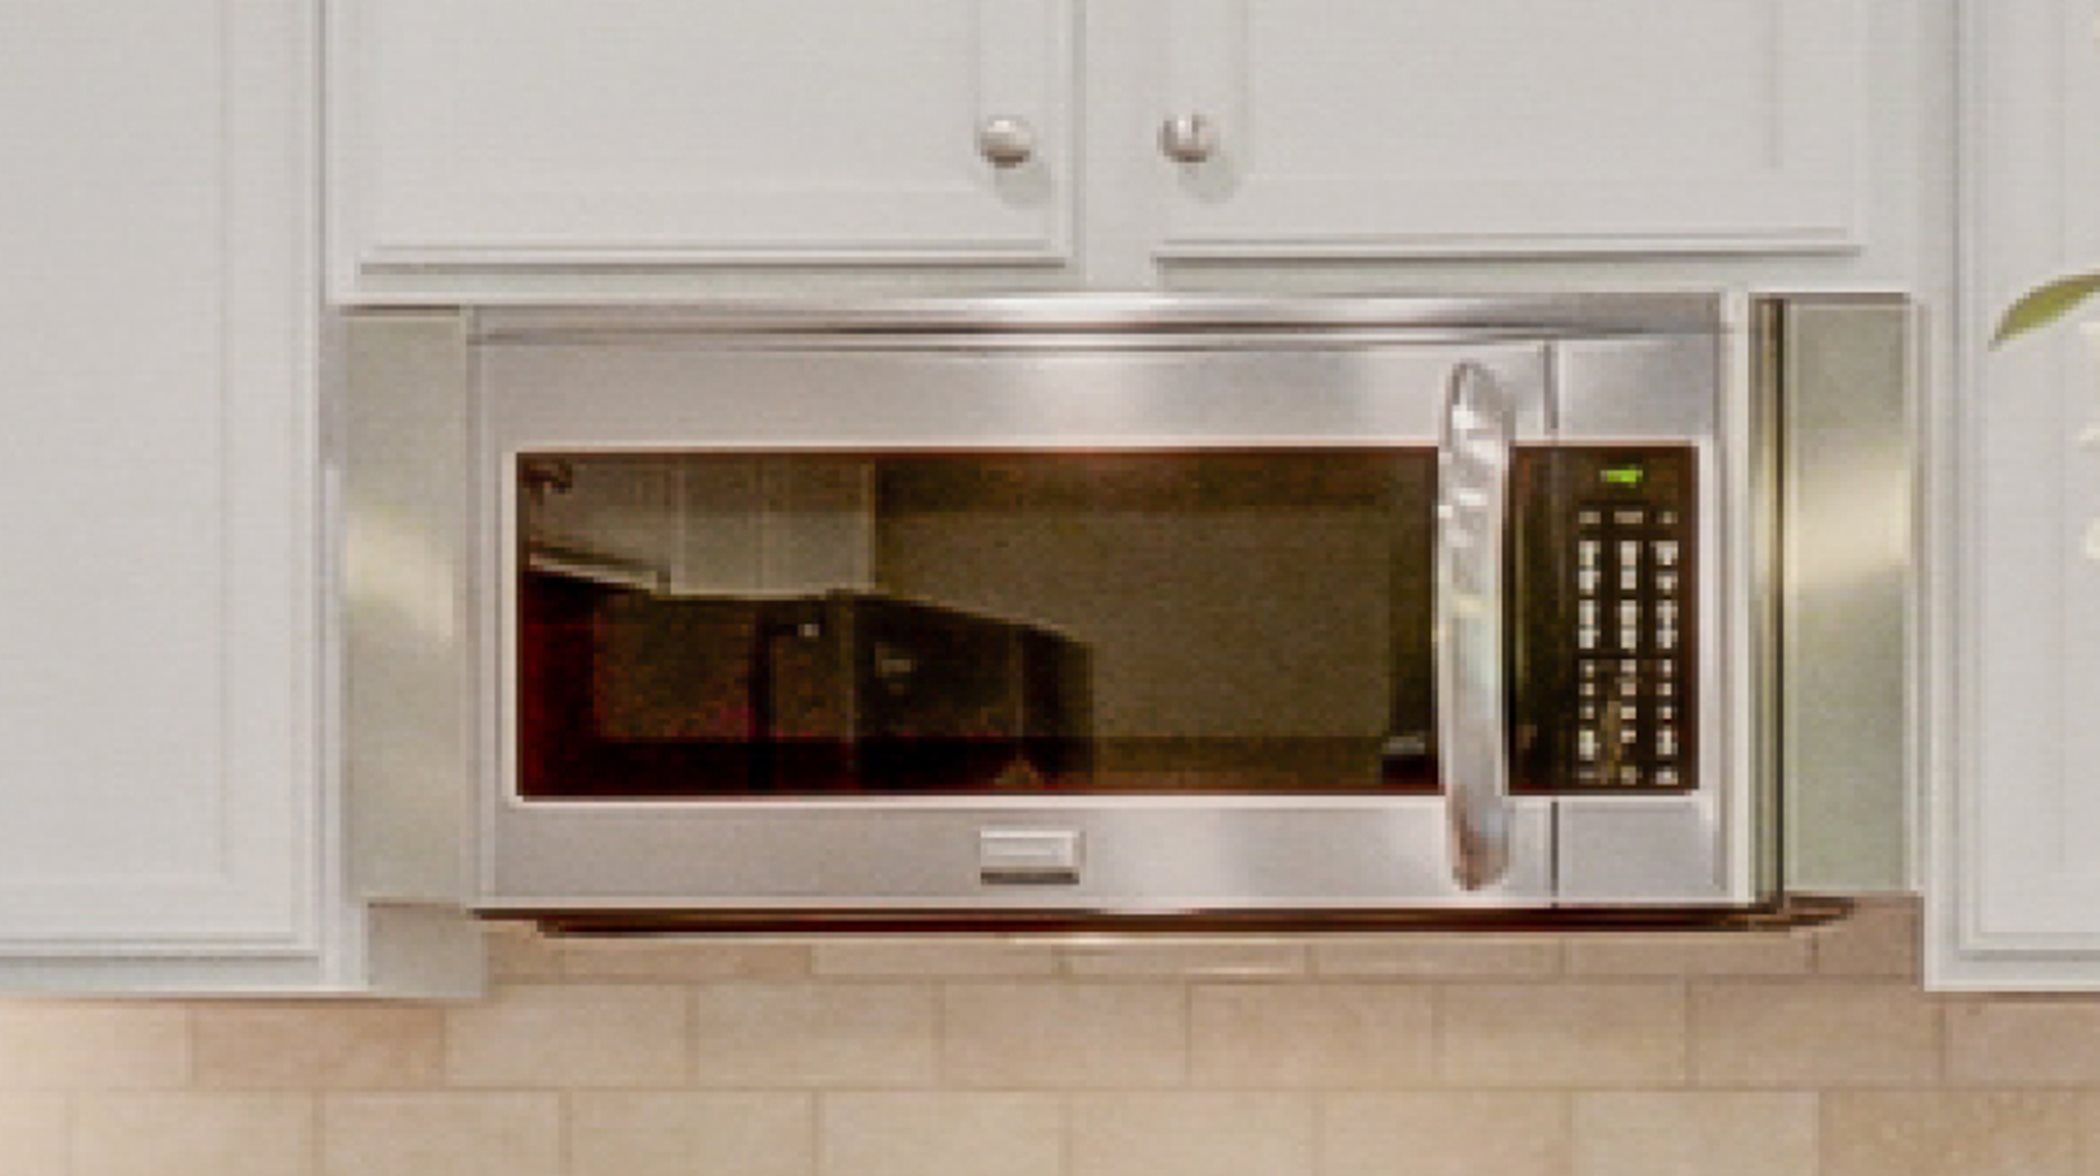 Millbridge Traditions II Fenton Microwave Oven